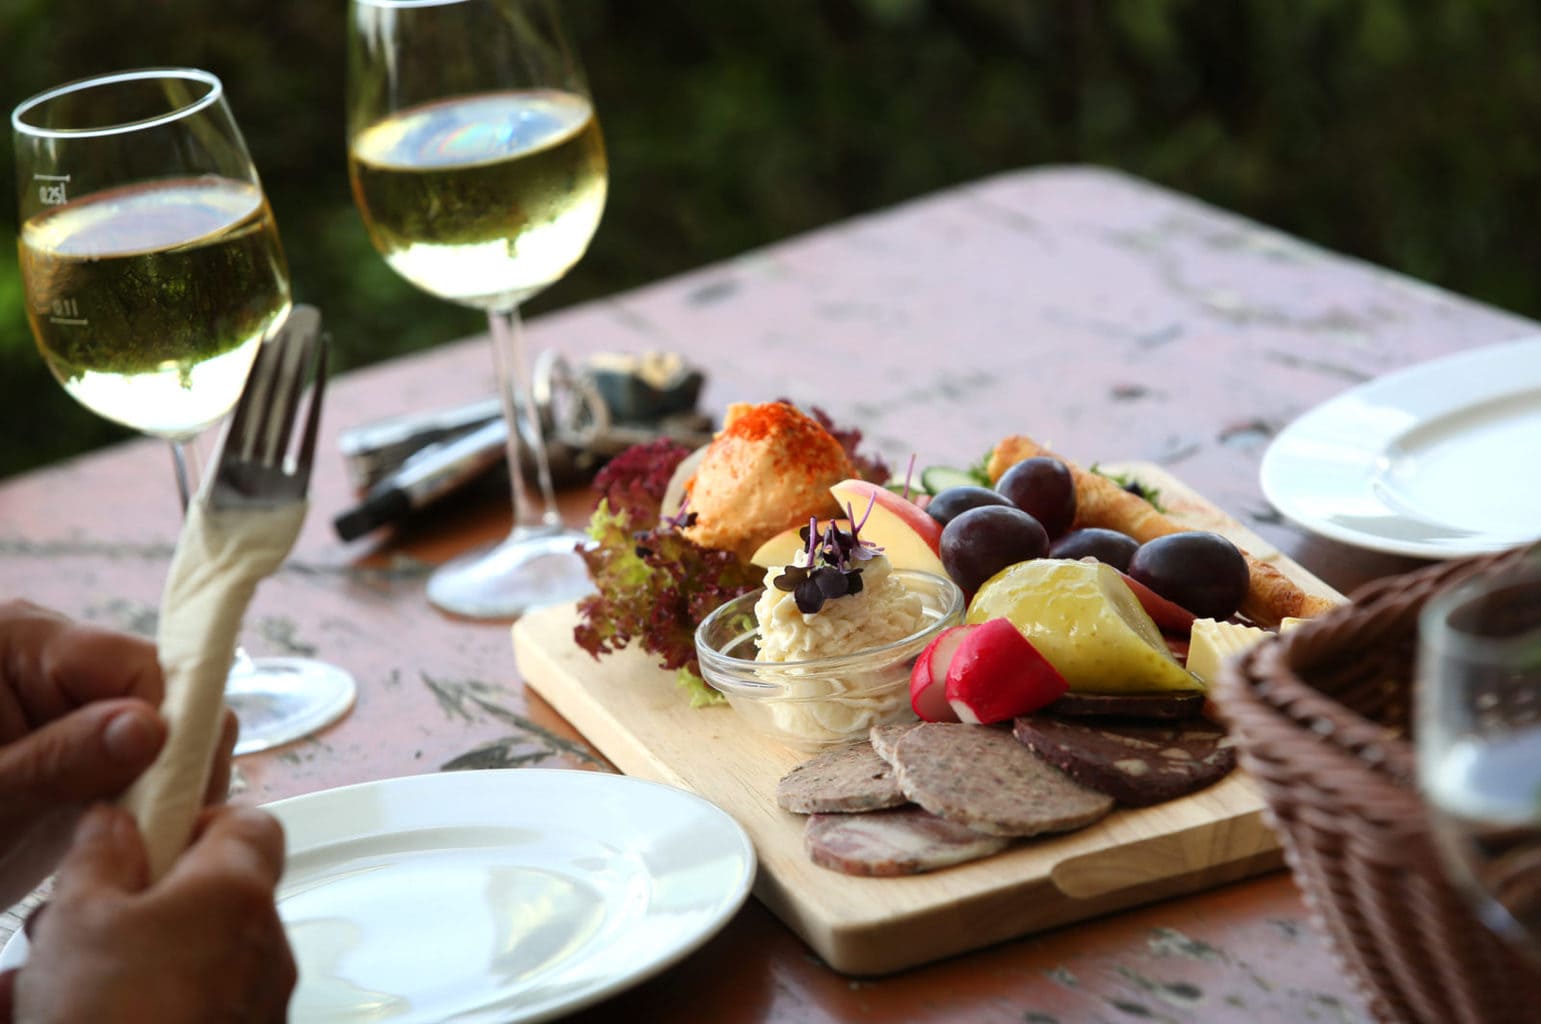 Culinaire specialiteiten behoren tot het leven in de Fränkische wijndorpjes